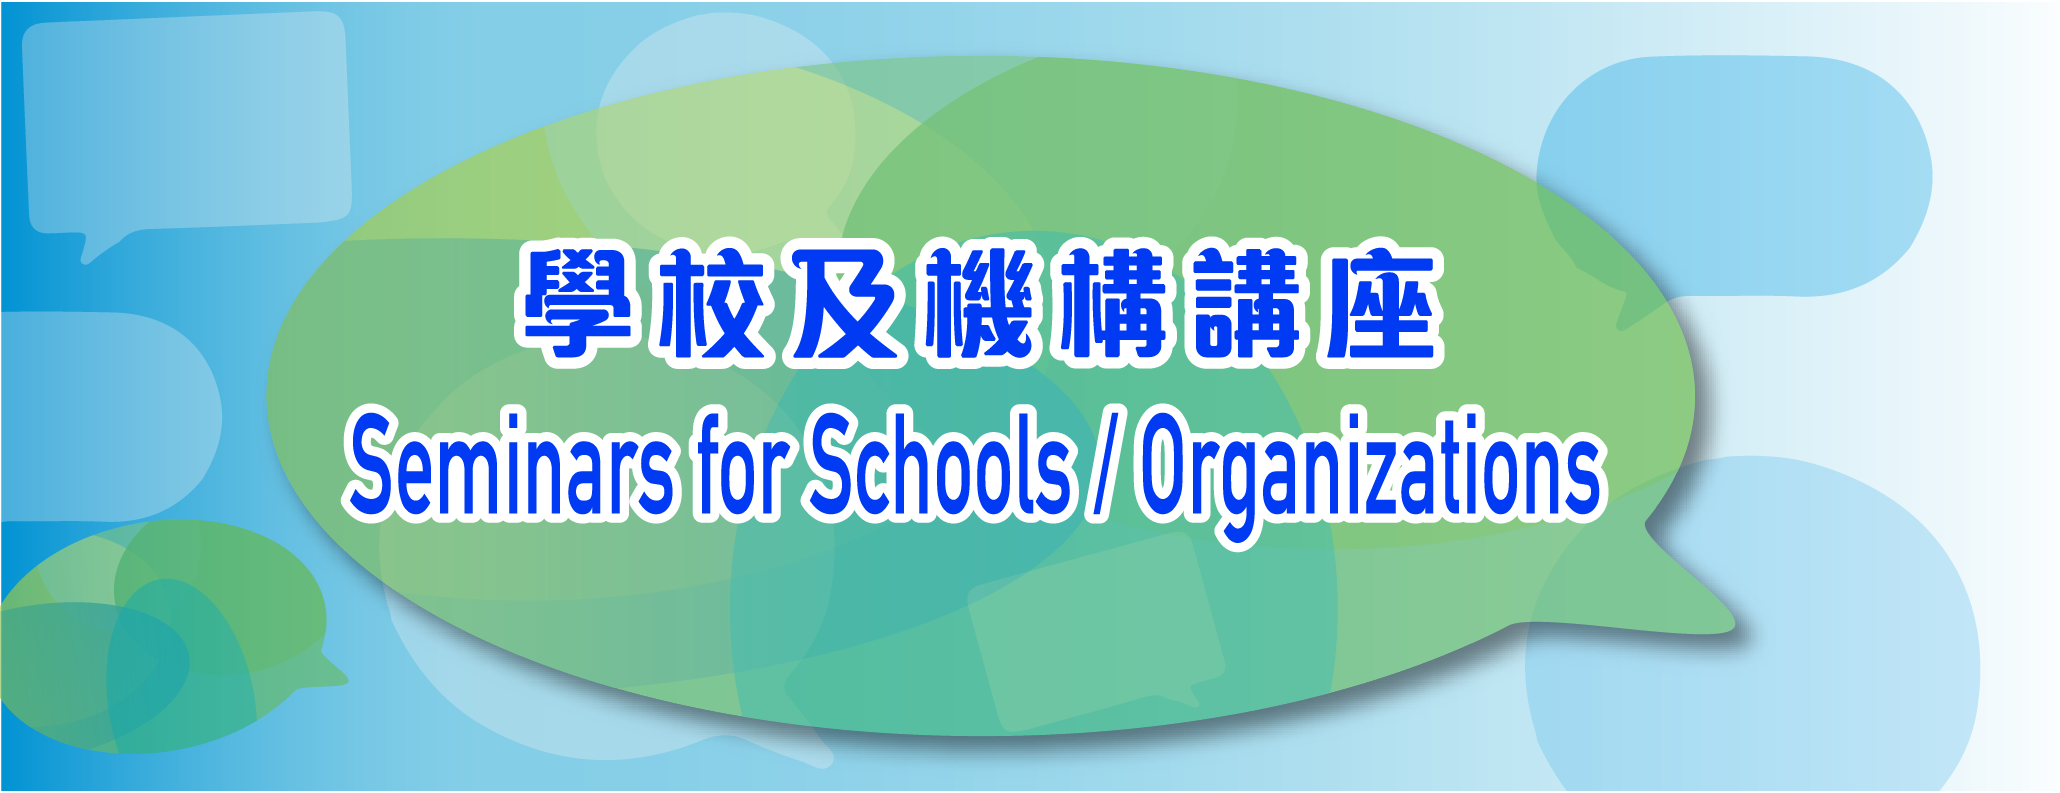 Seminars for Schools / Organizations